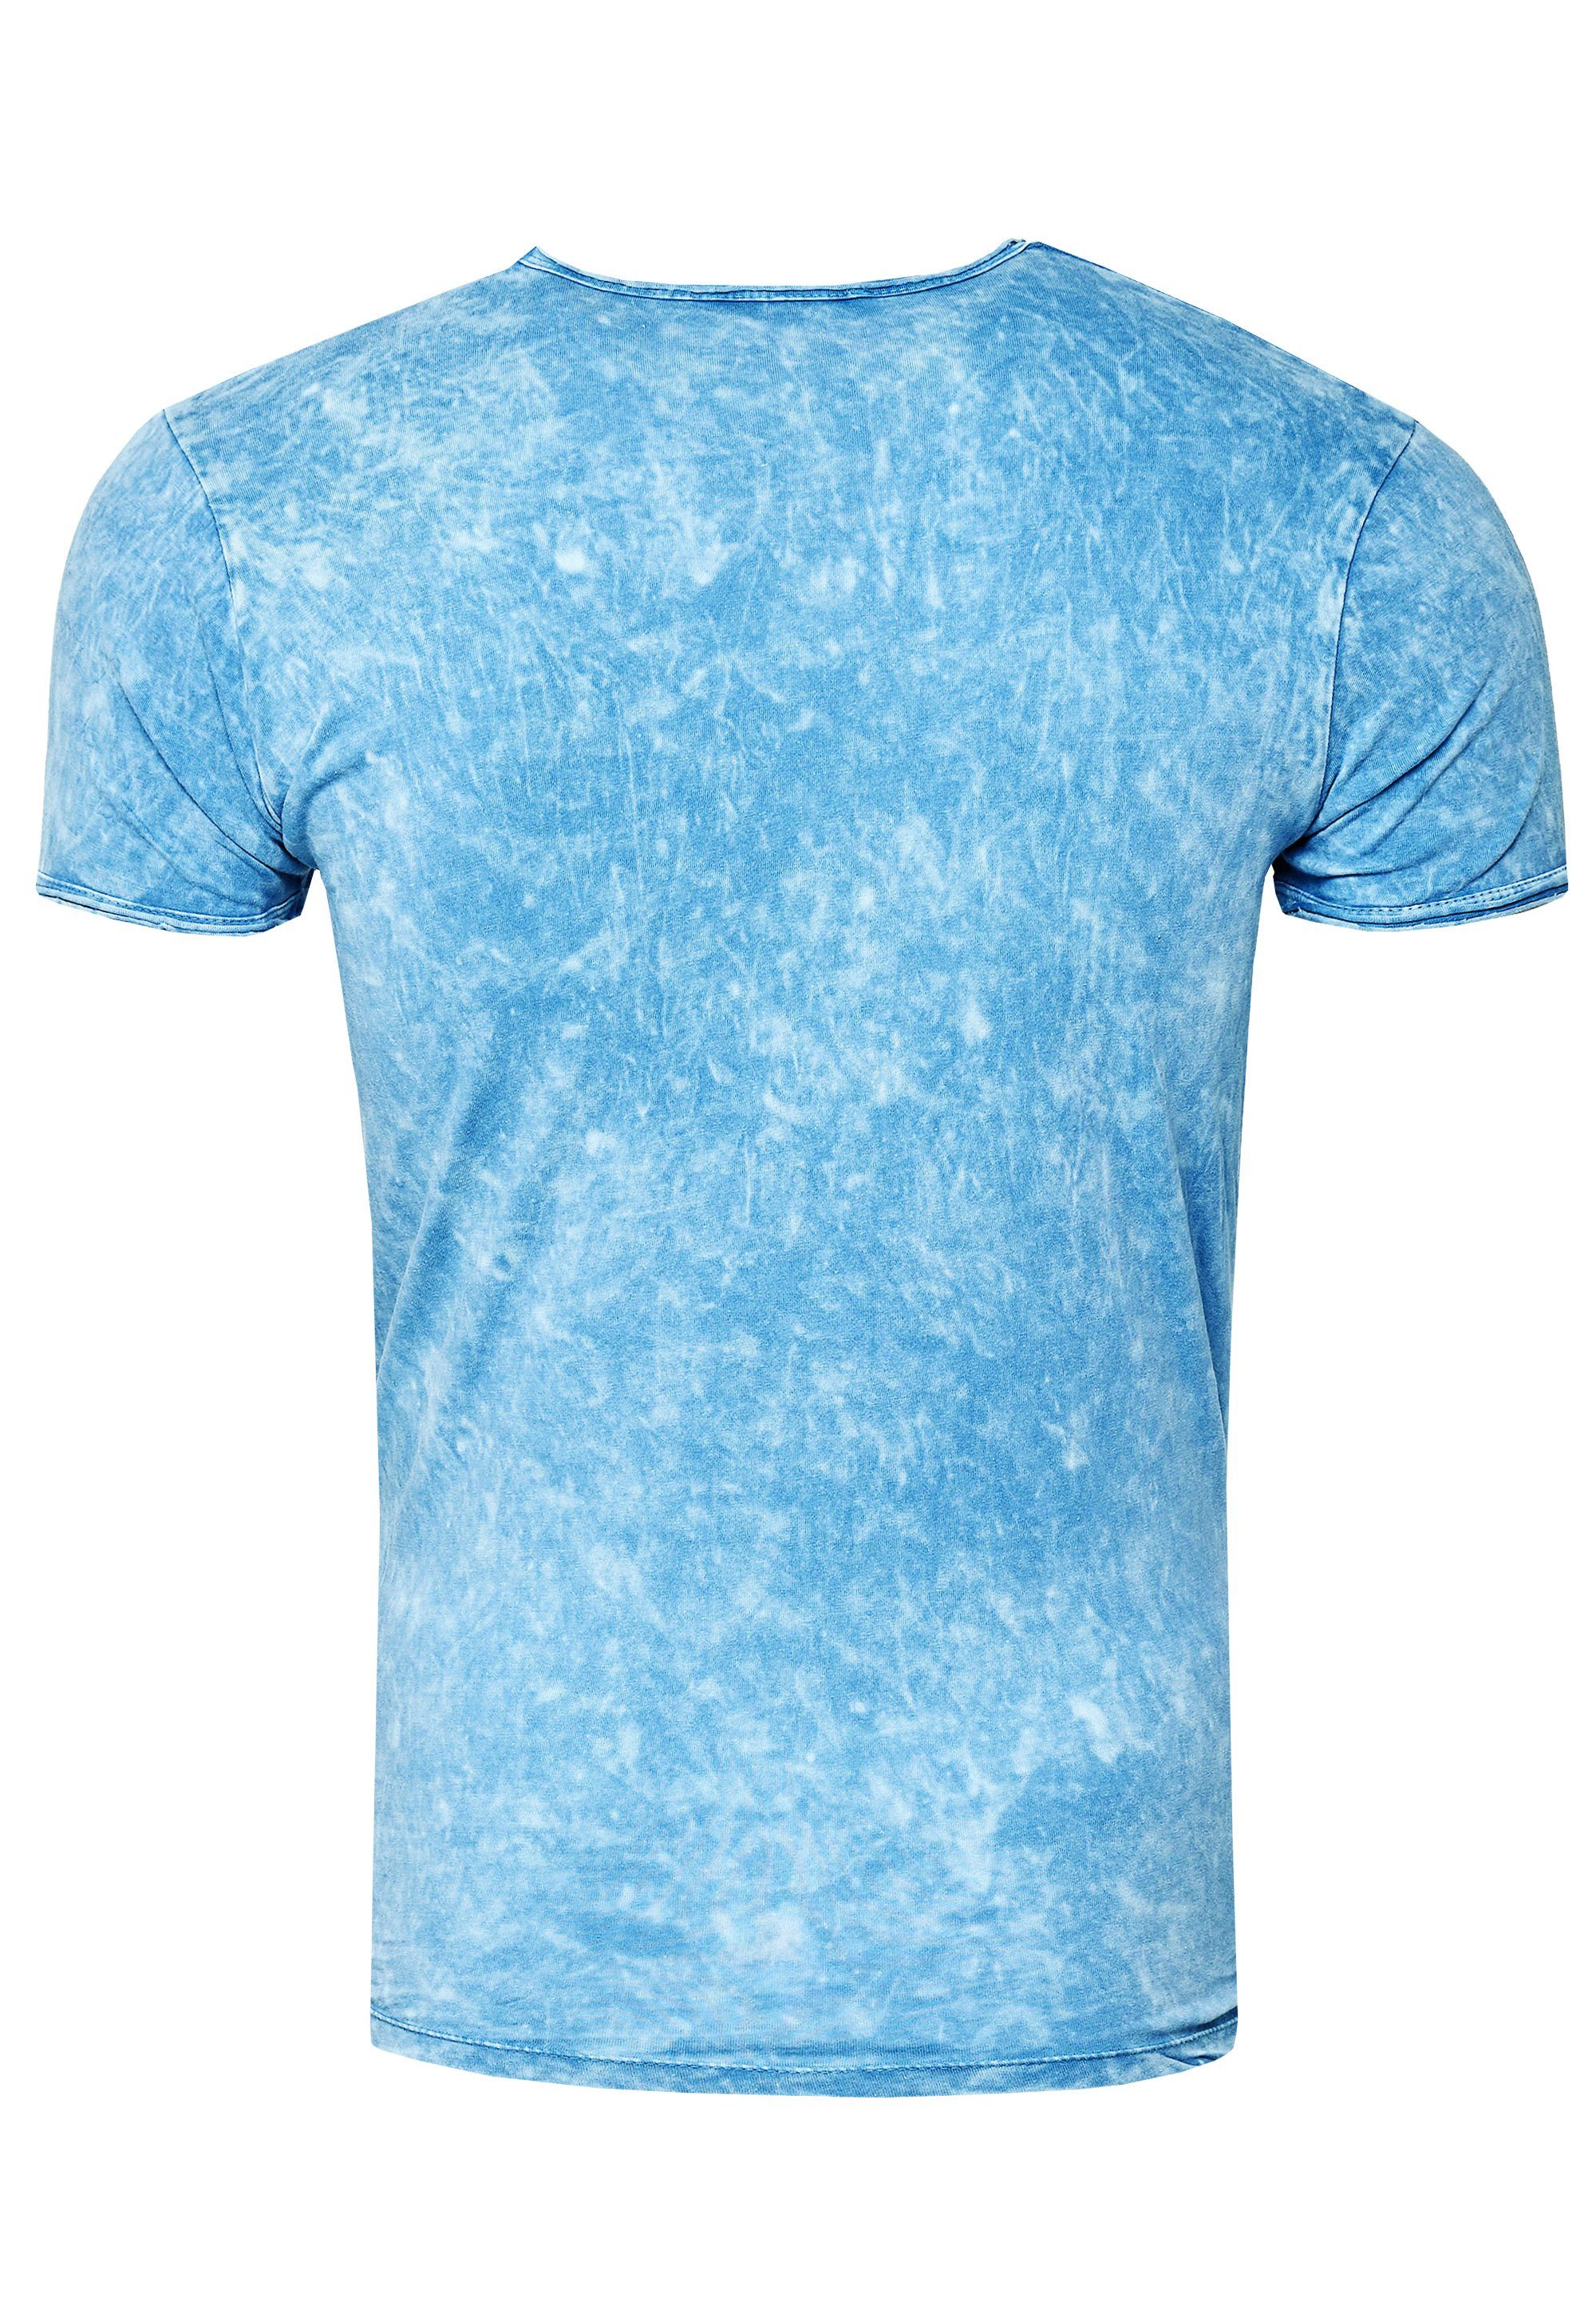 Rusty Neal T-Shirt mit hellblau eindrucksvollem Print